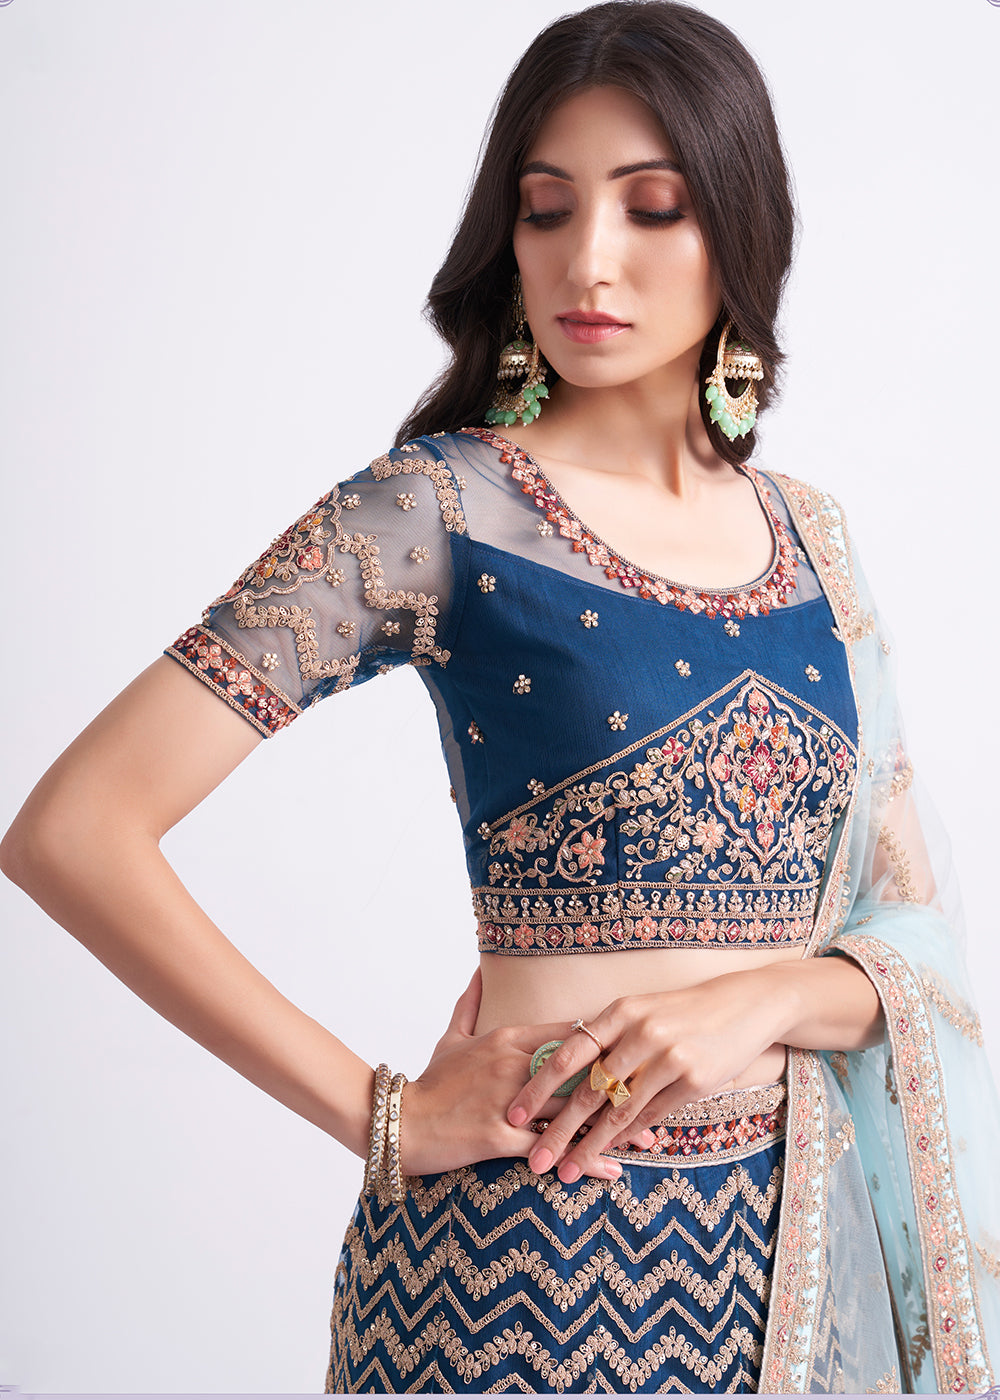 Buy Now Persian Blue Wedding Style Designer Bridal Lehenga Choli Online in Canada, UK, USA & Worldwide at Empress Clothing. 